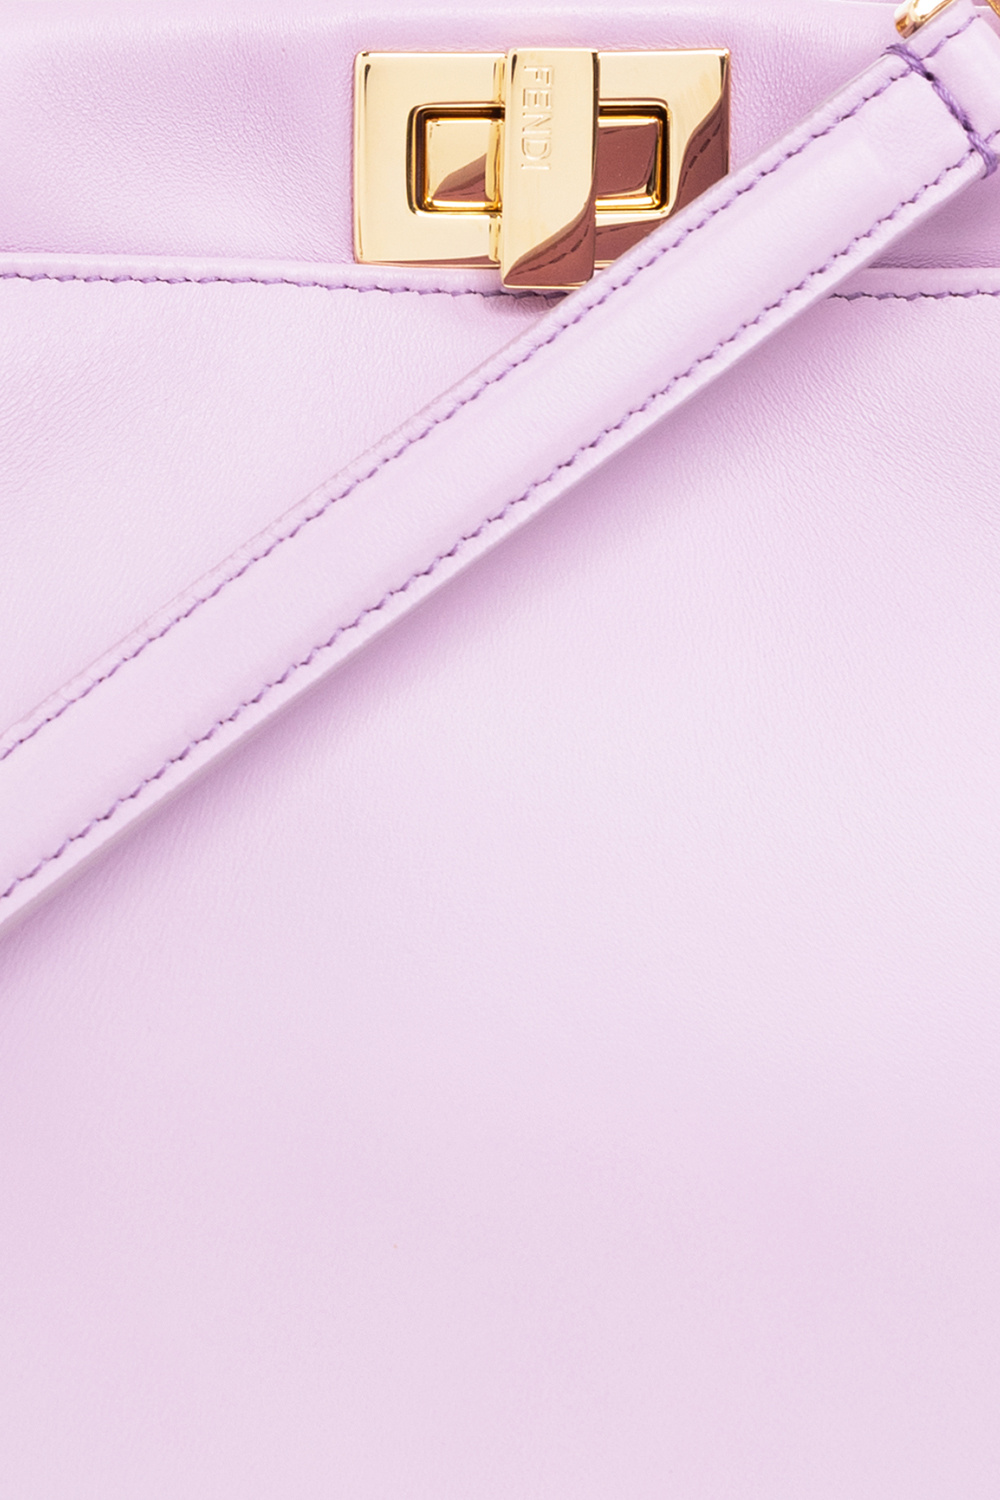 Fendi F Logo Lavanda Pink Leather Card Case Wallet